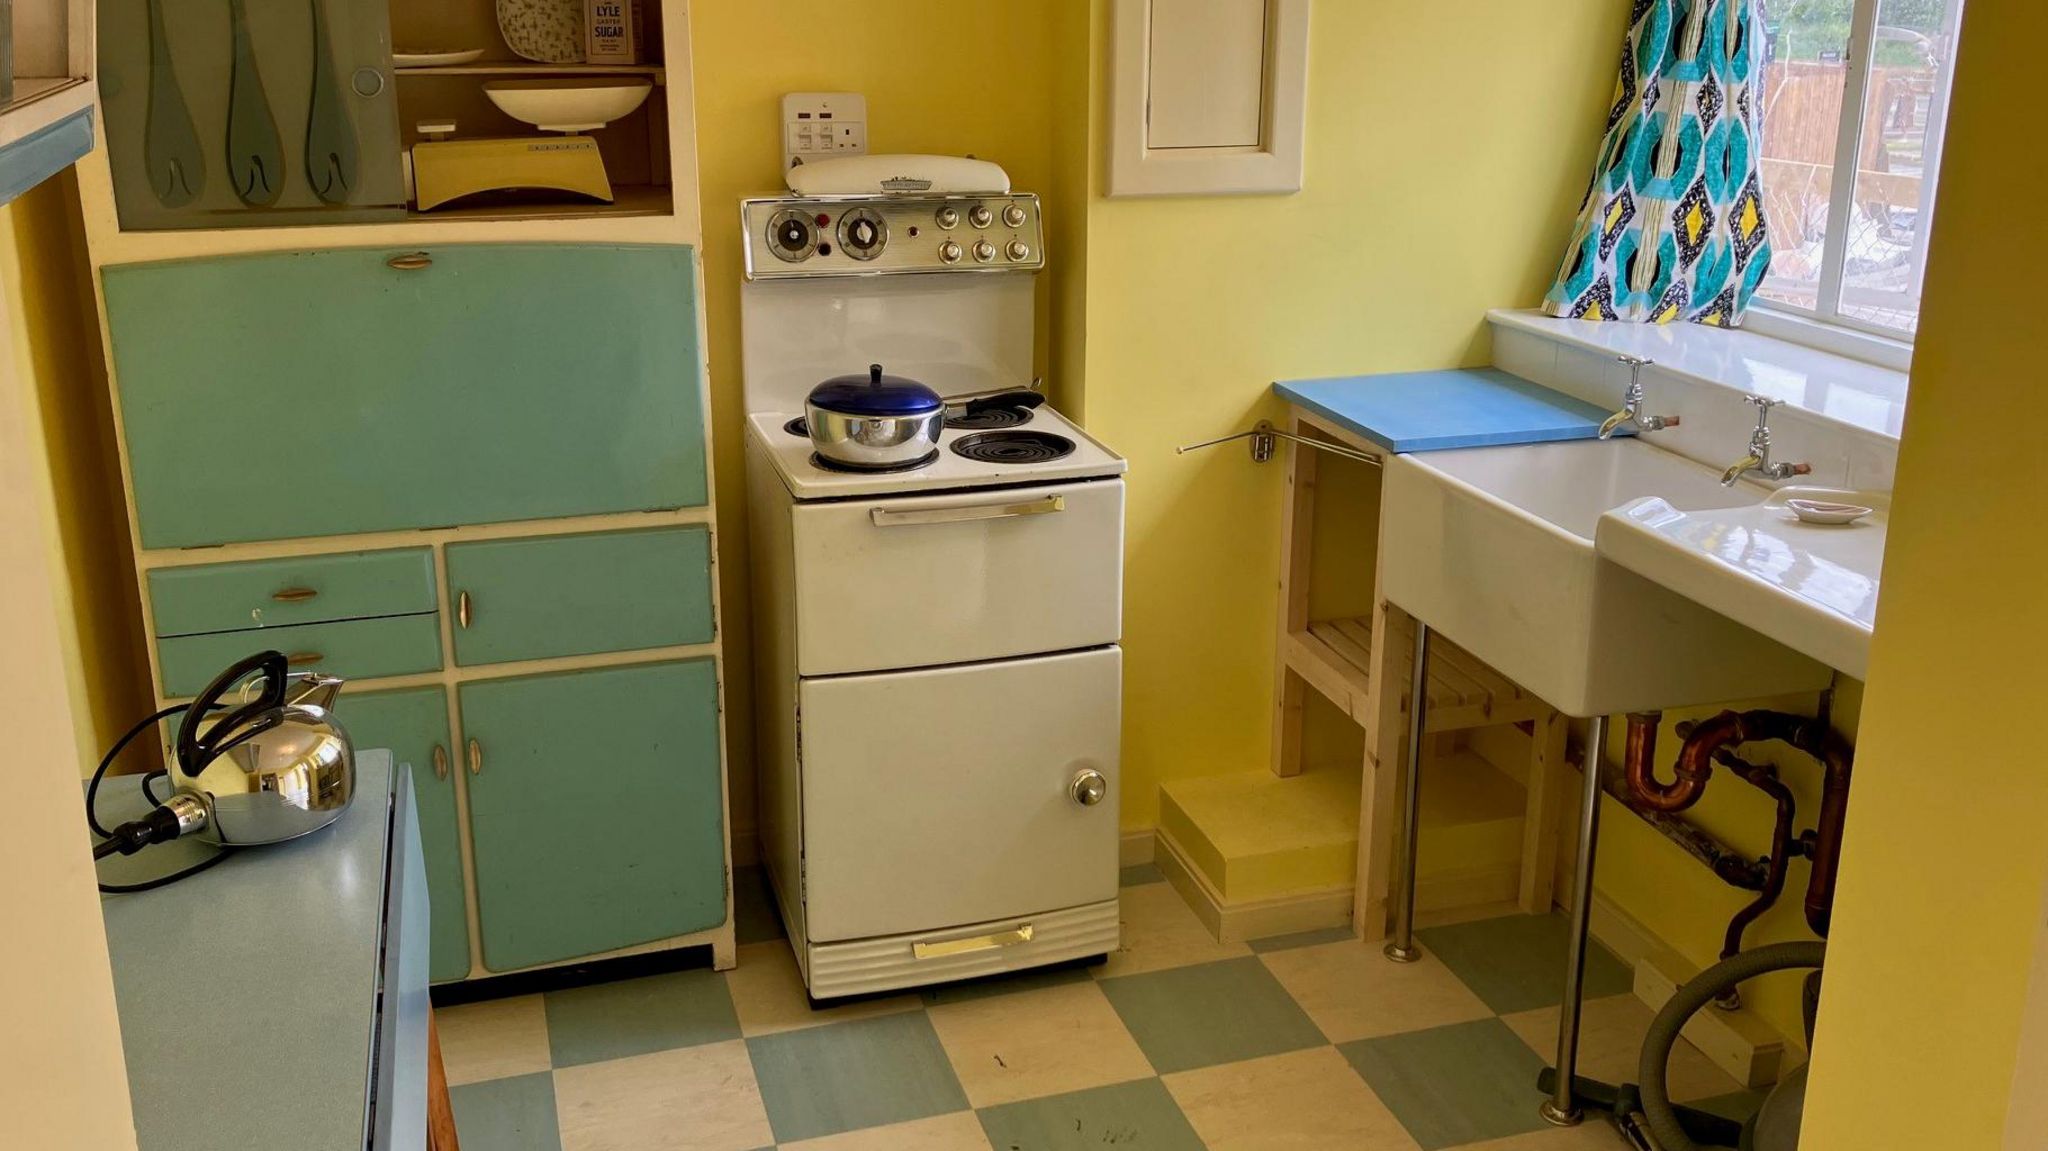 Replica 1950s kitchen